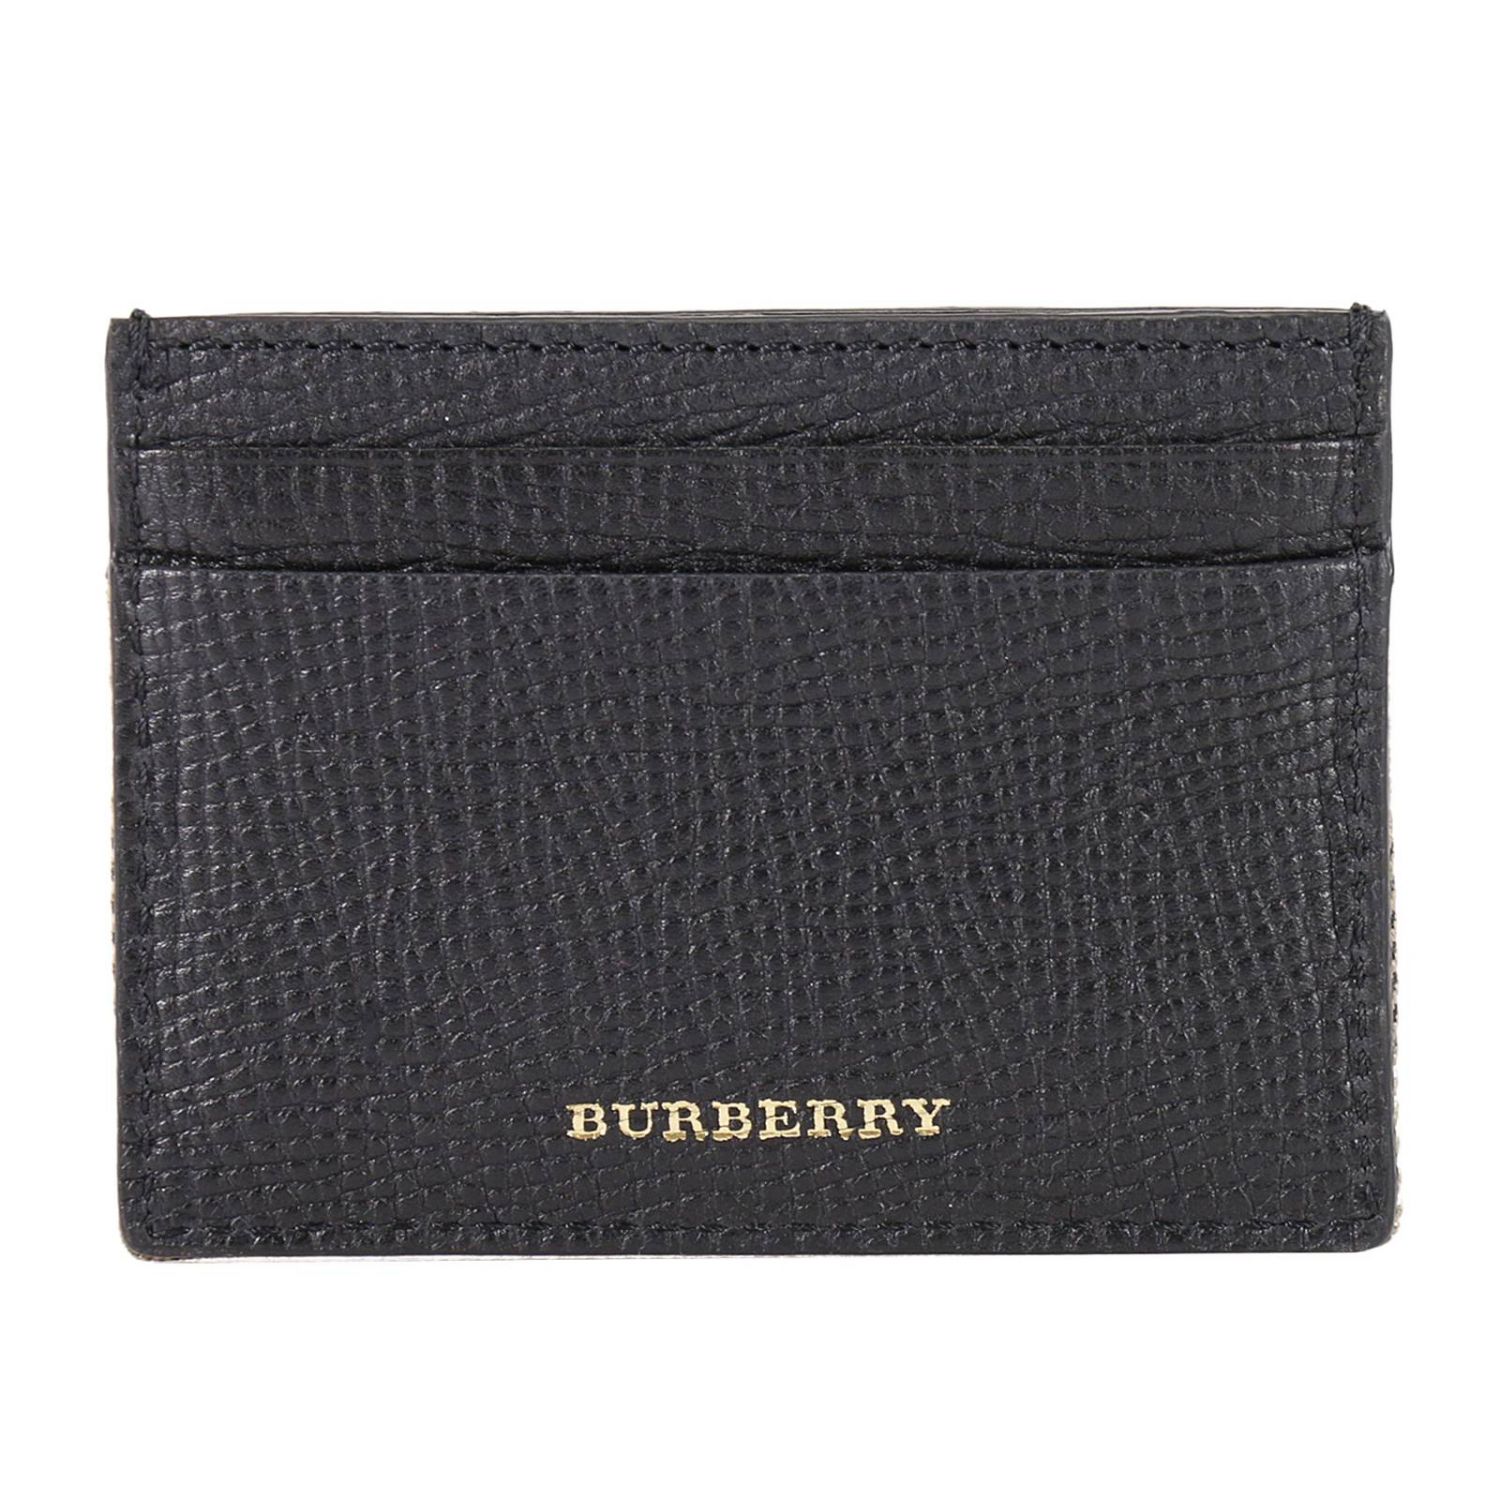 Burberry Outlet: Sandon porta carte di credito pelle con dettaglio